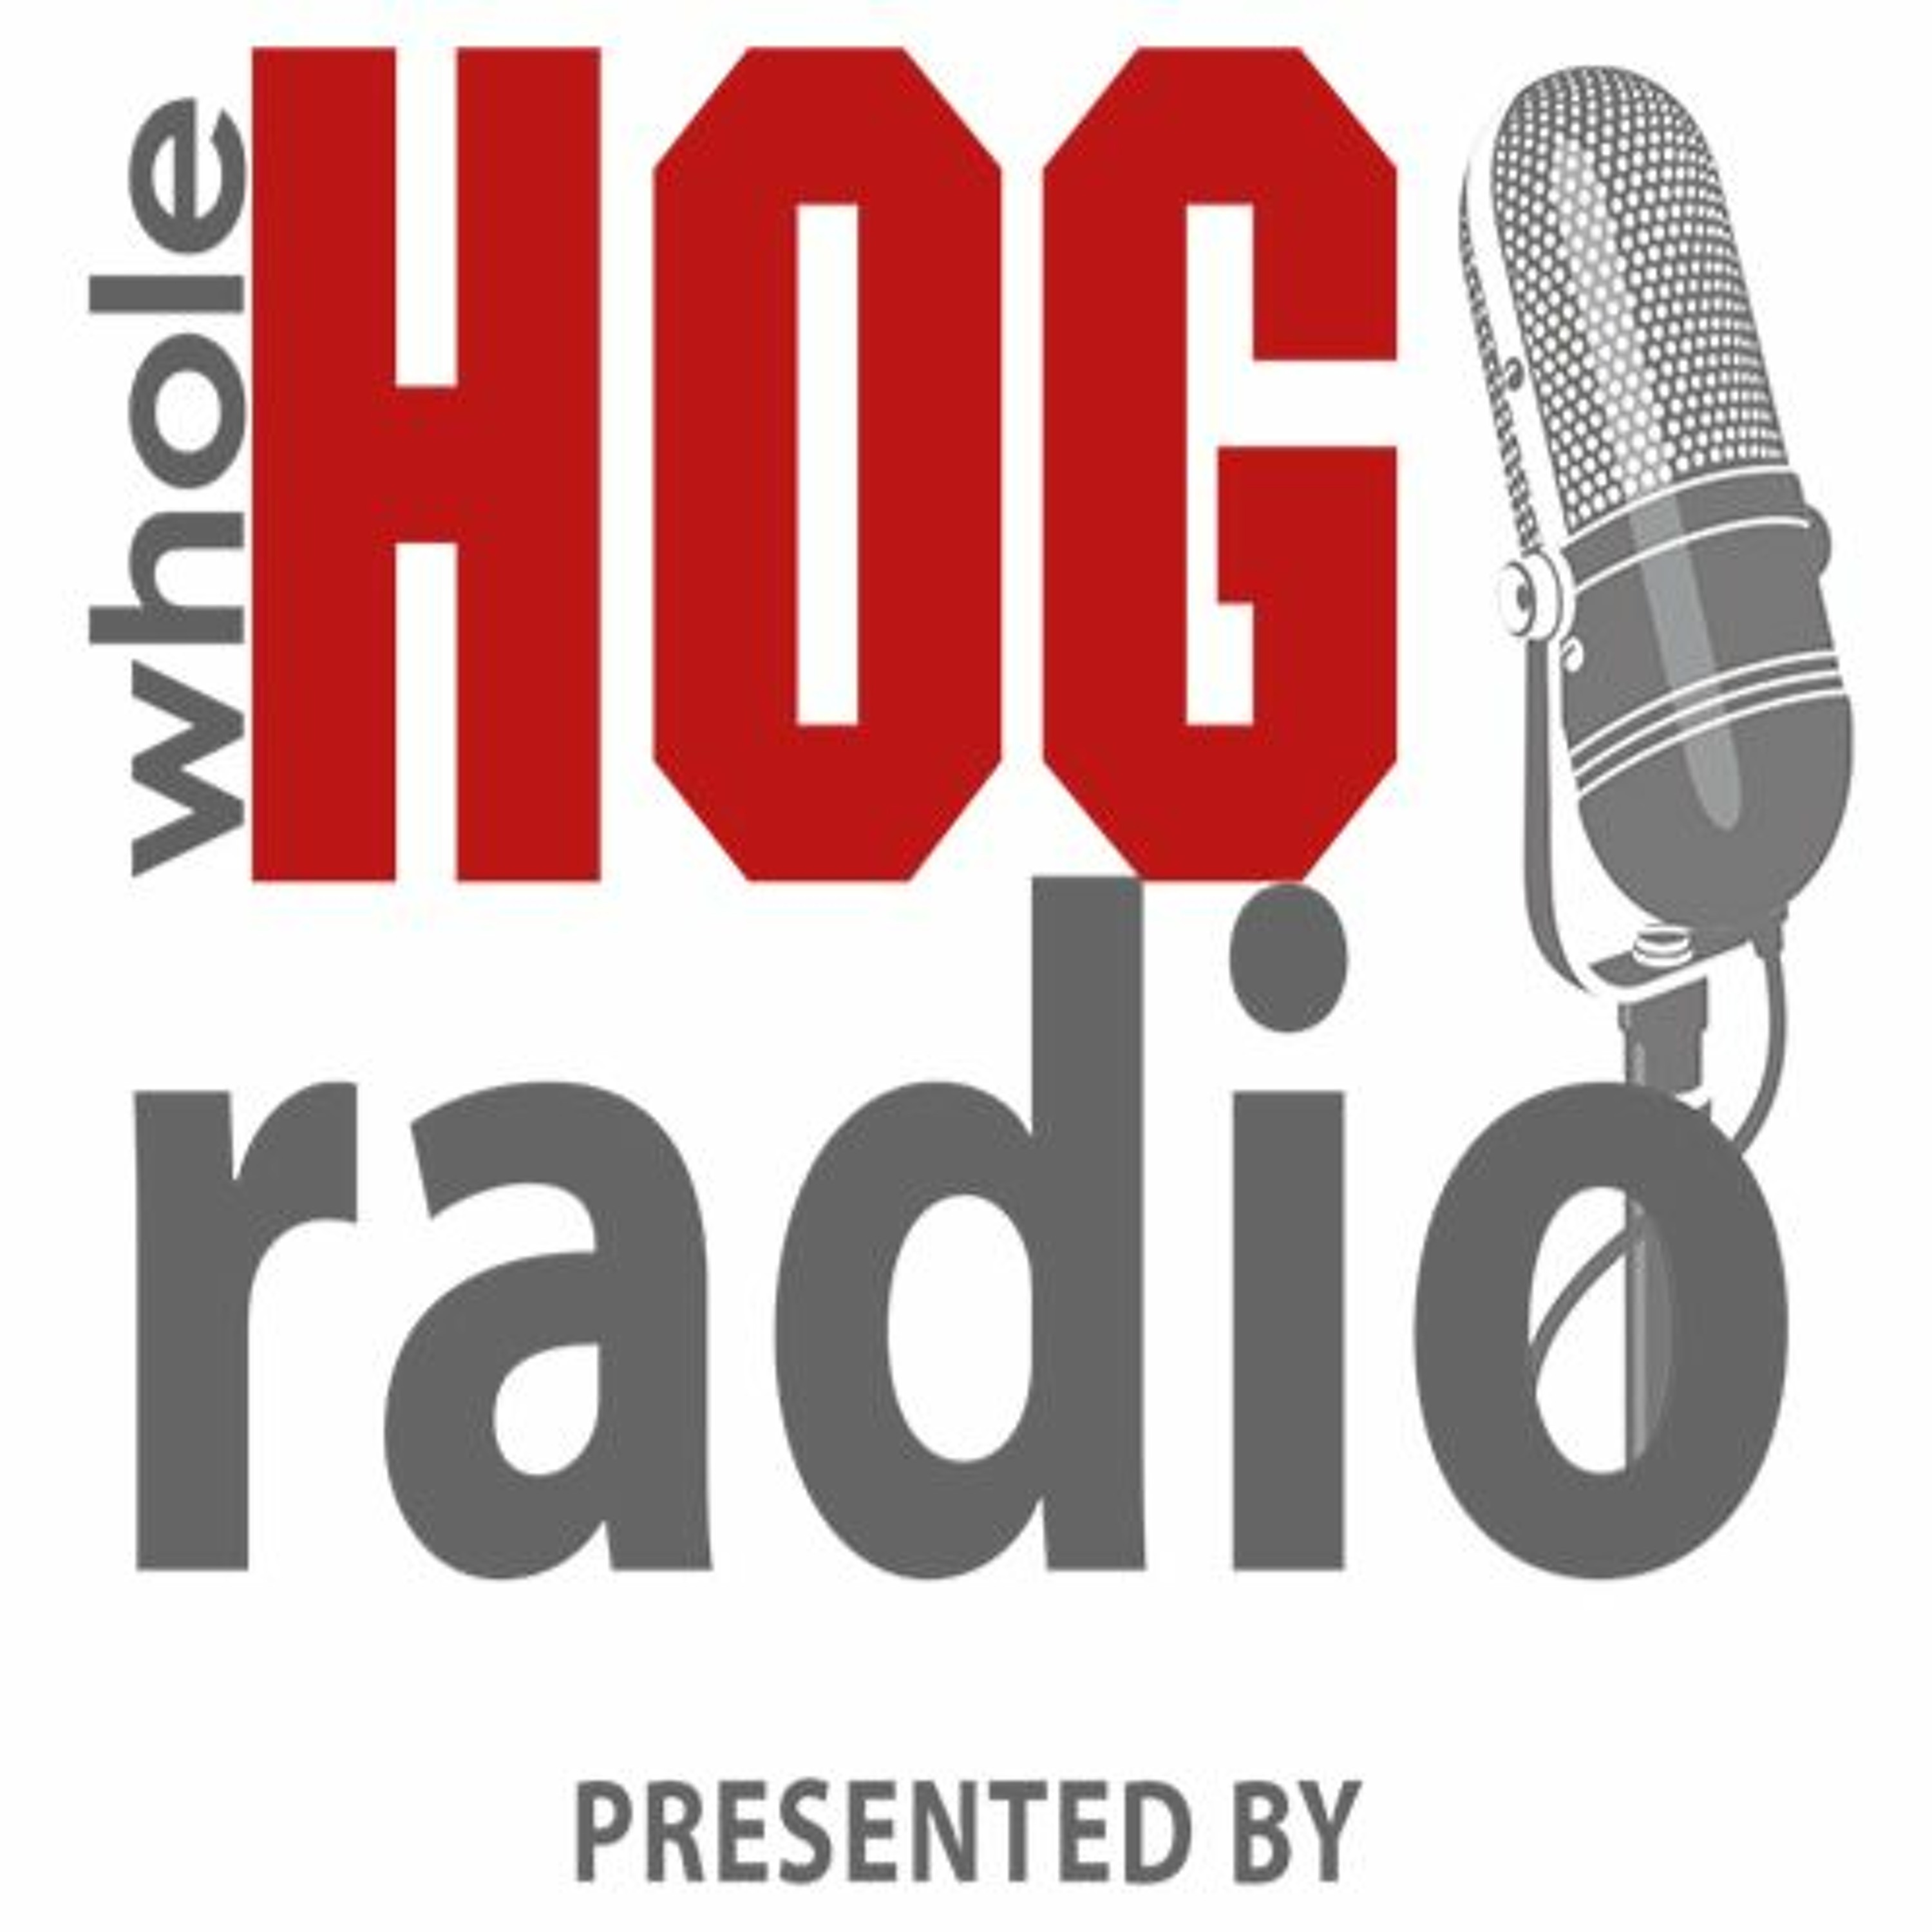 WholeHog Podcast: Treylon Burks on the baseball diamond, basketball adds more games